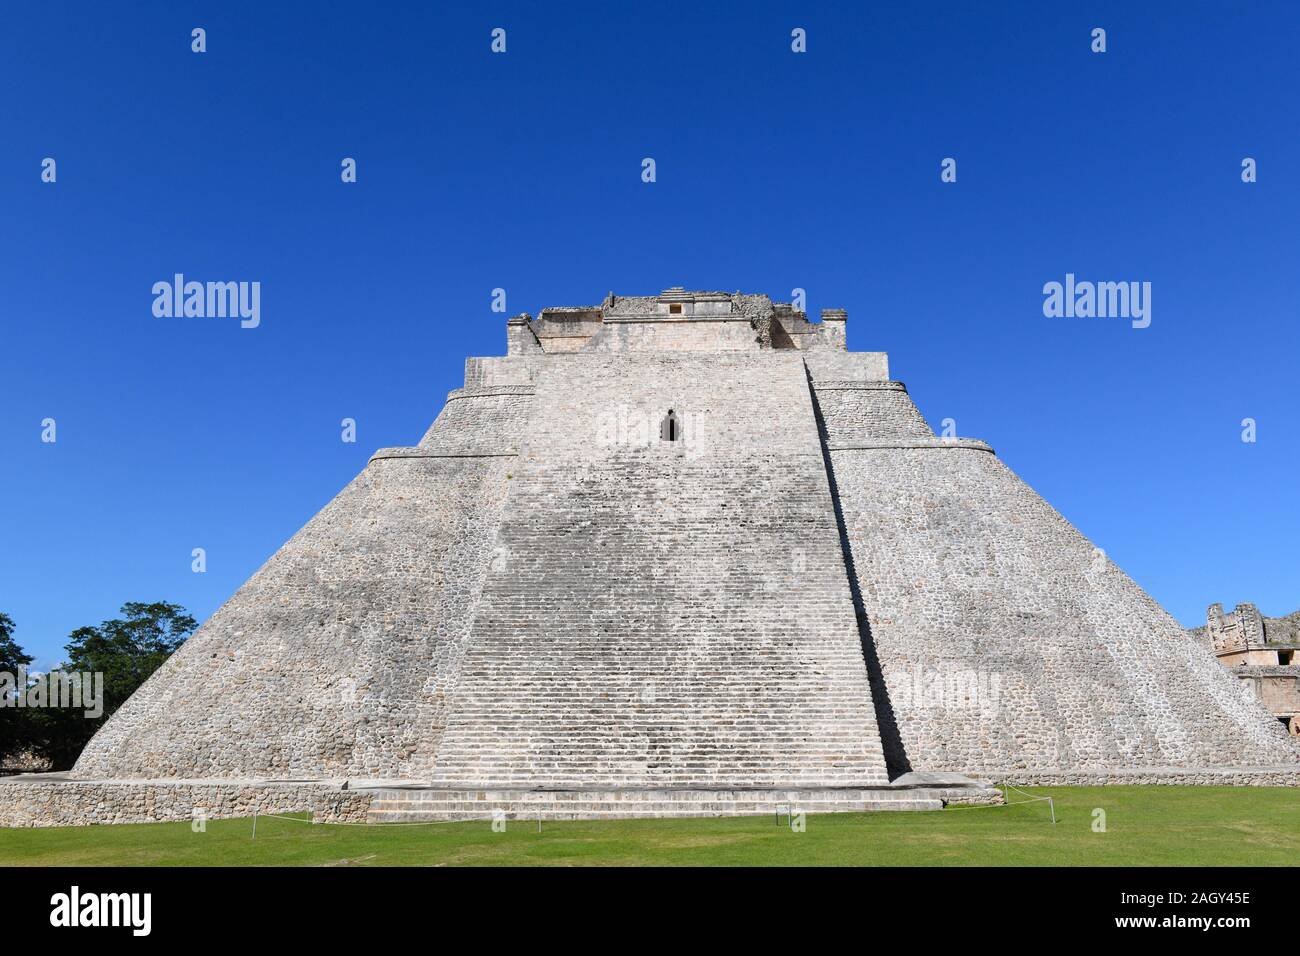 Pyramide des Zauberers in Uxmal, einer alten Maya Stadt der klassischen Periode in der puuc Region der östlichen Halbinsel Yucatan, Mexiko Stockfoto